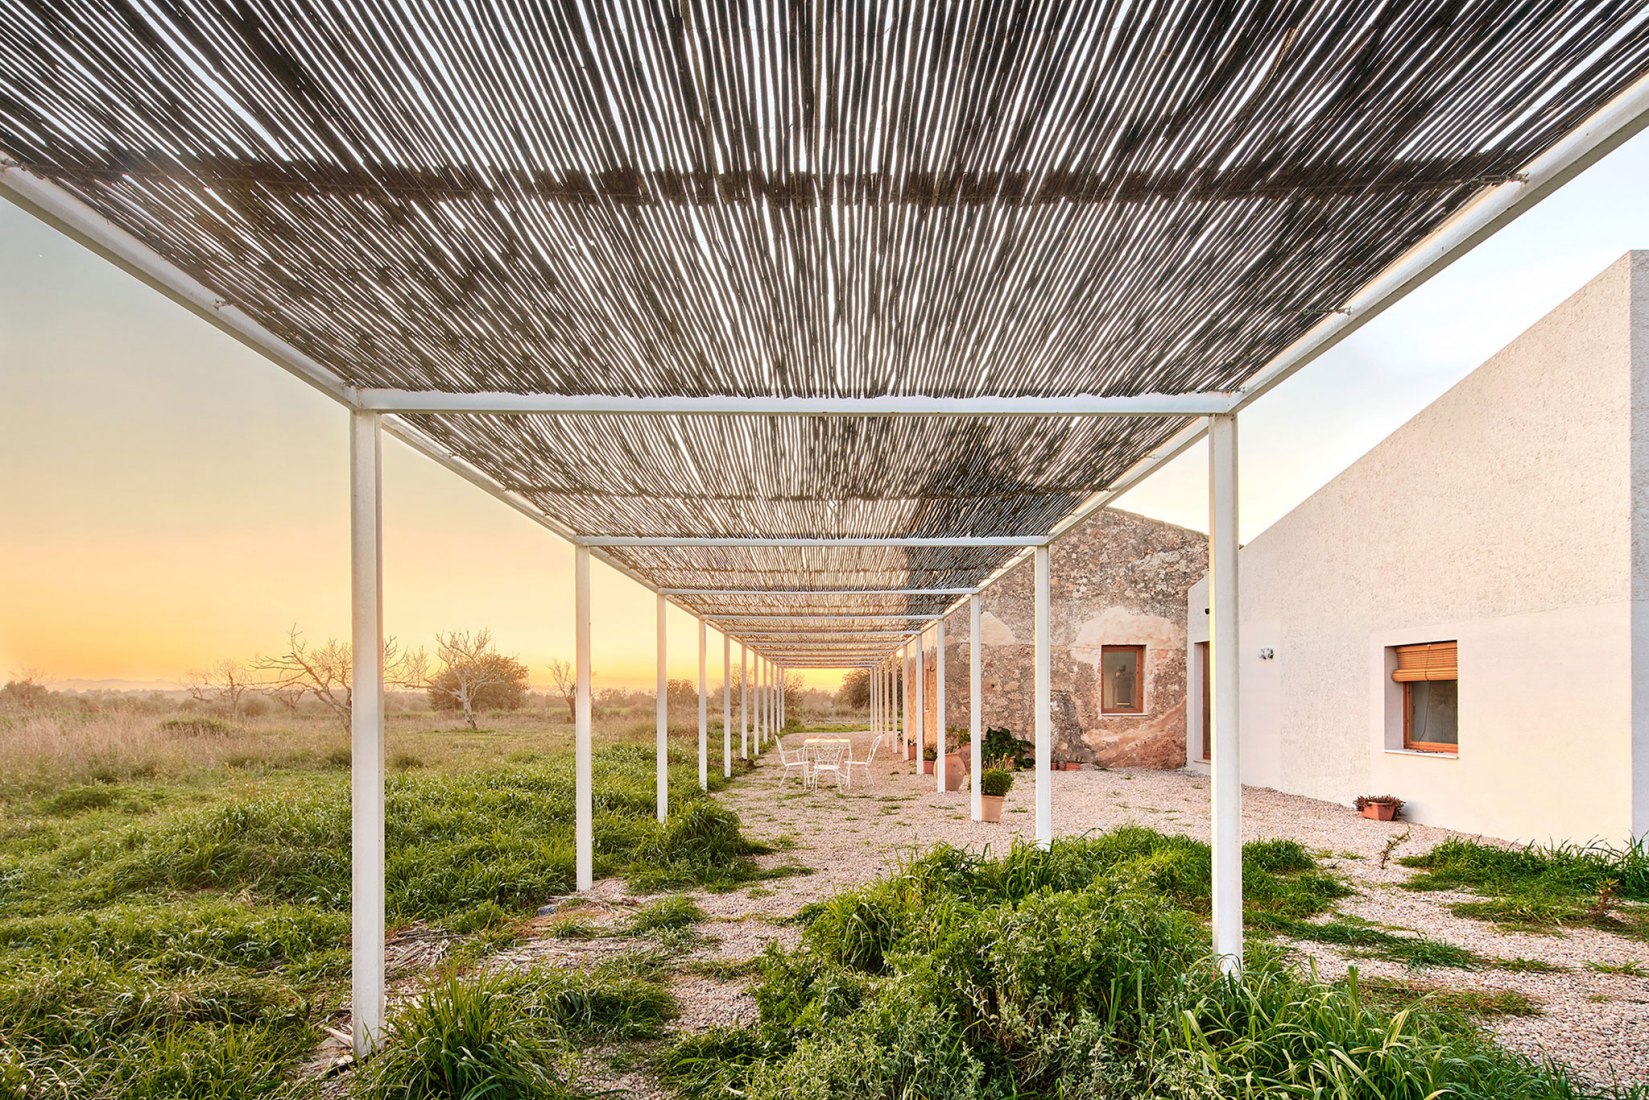 Habitar el campo por Flexoarquitectura + Bàrbara Vich. Fotografía por José Hevia